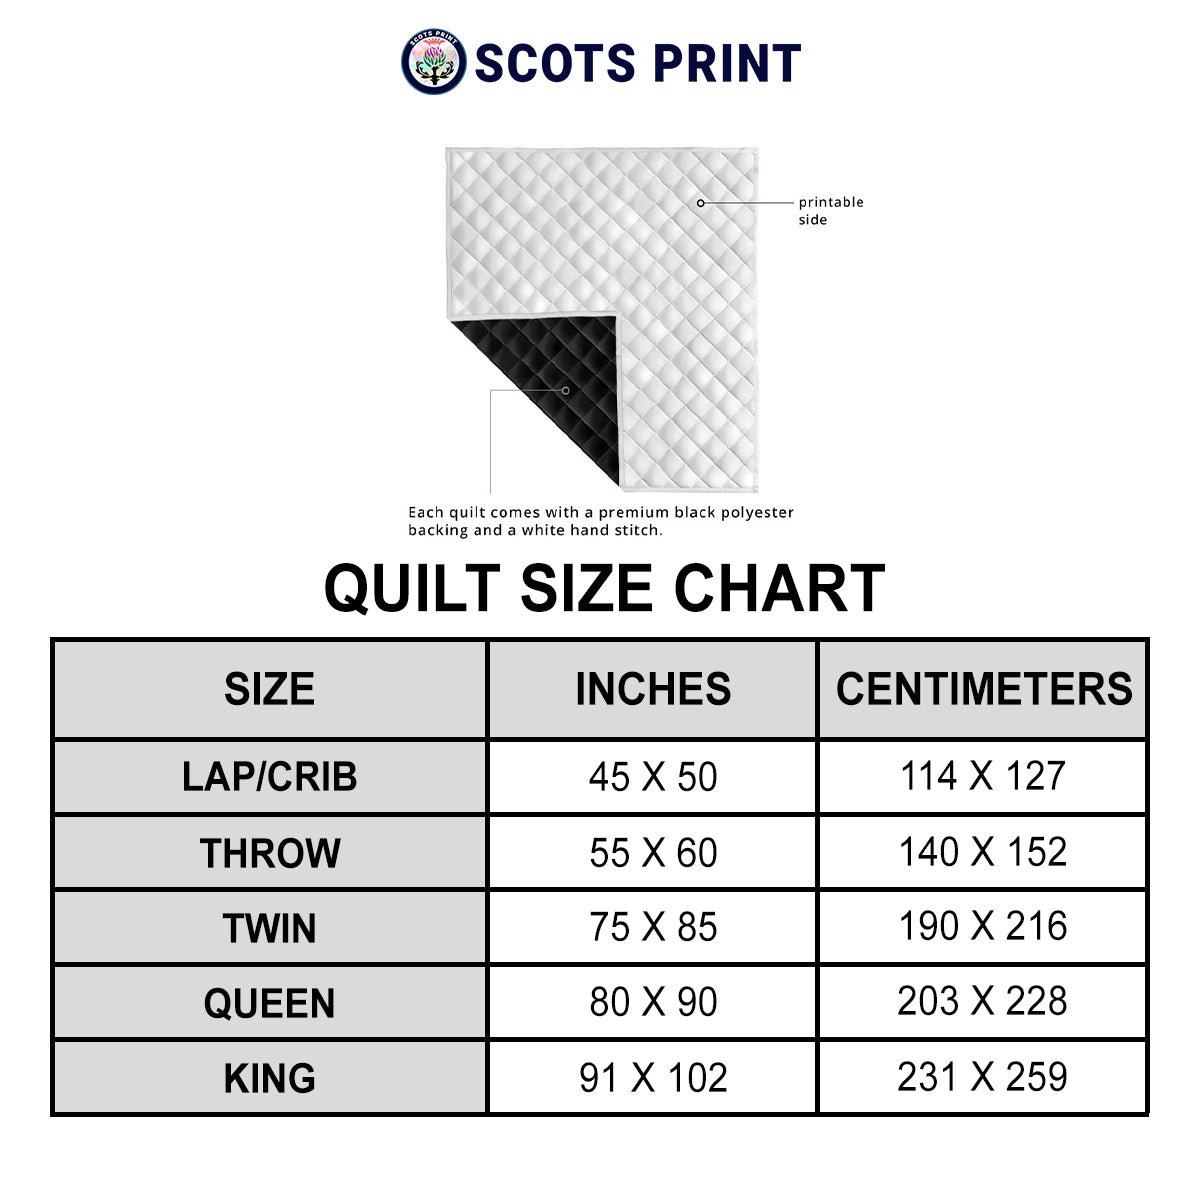 McLean of Duart Ancient Tartan Crest Premium Quilt - Celtic Thistle Style